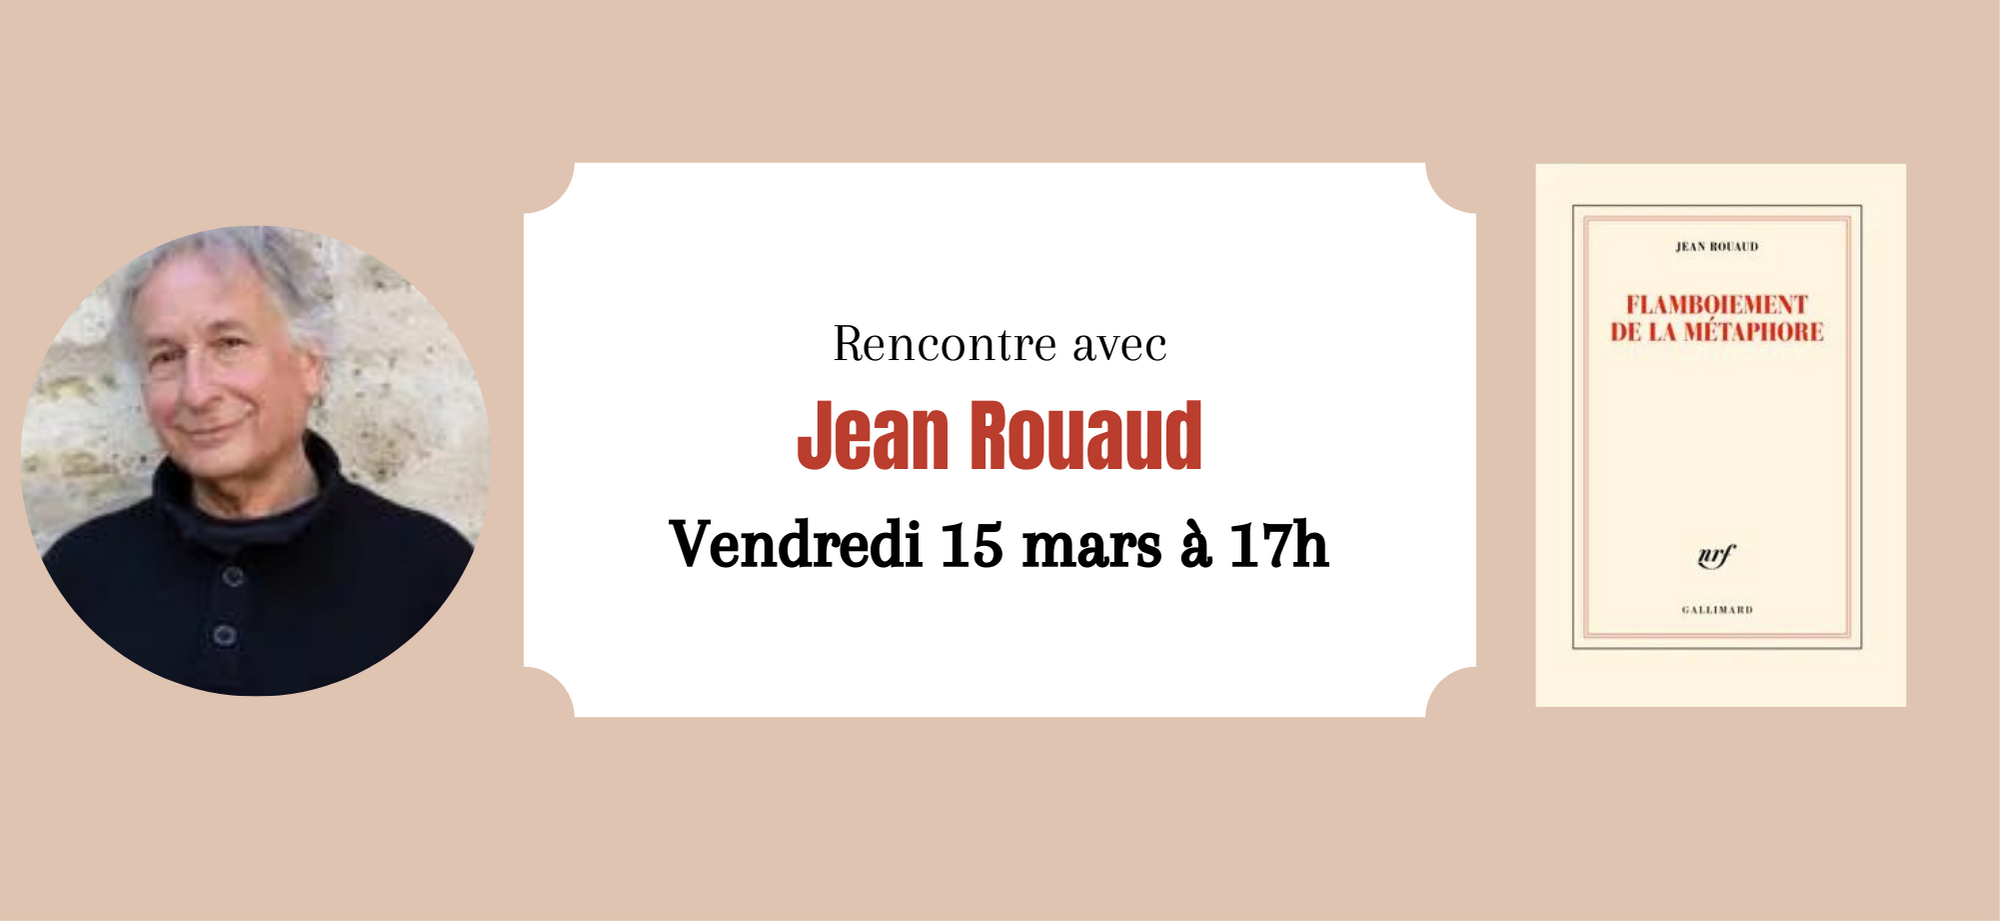 Jean Rouaud